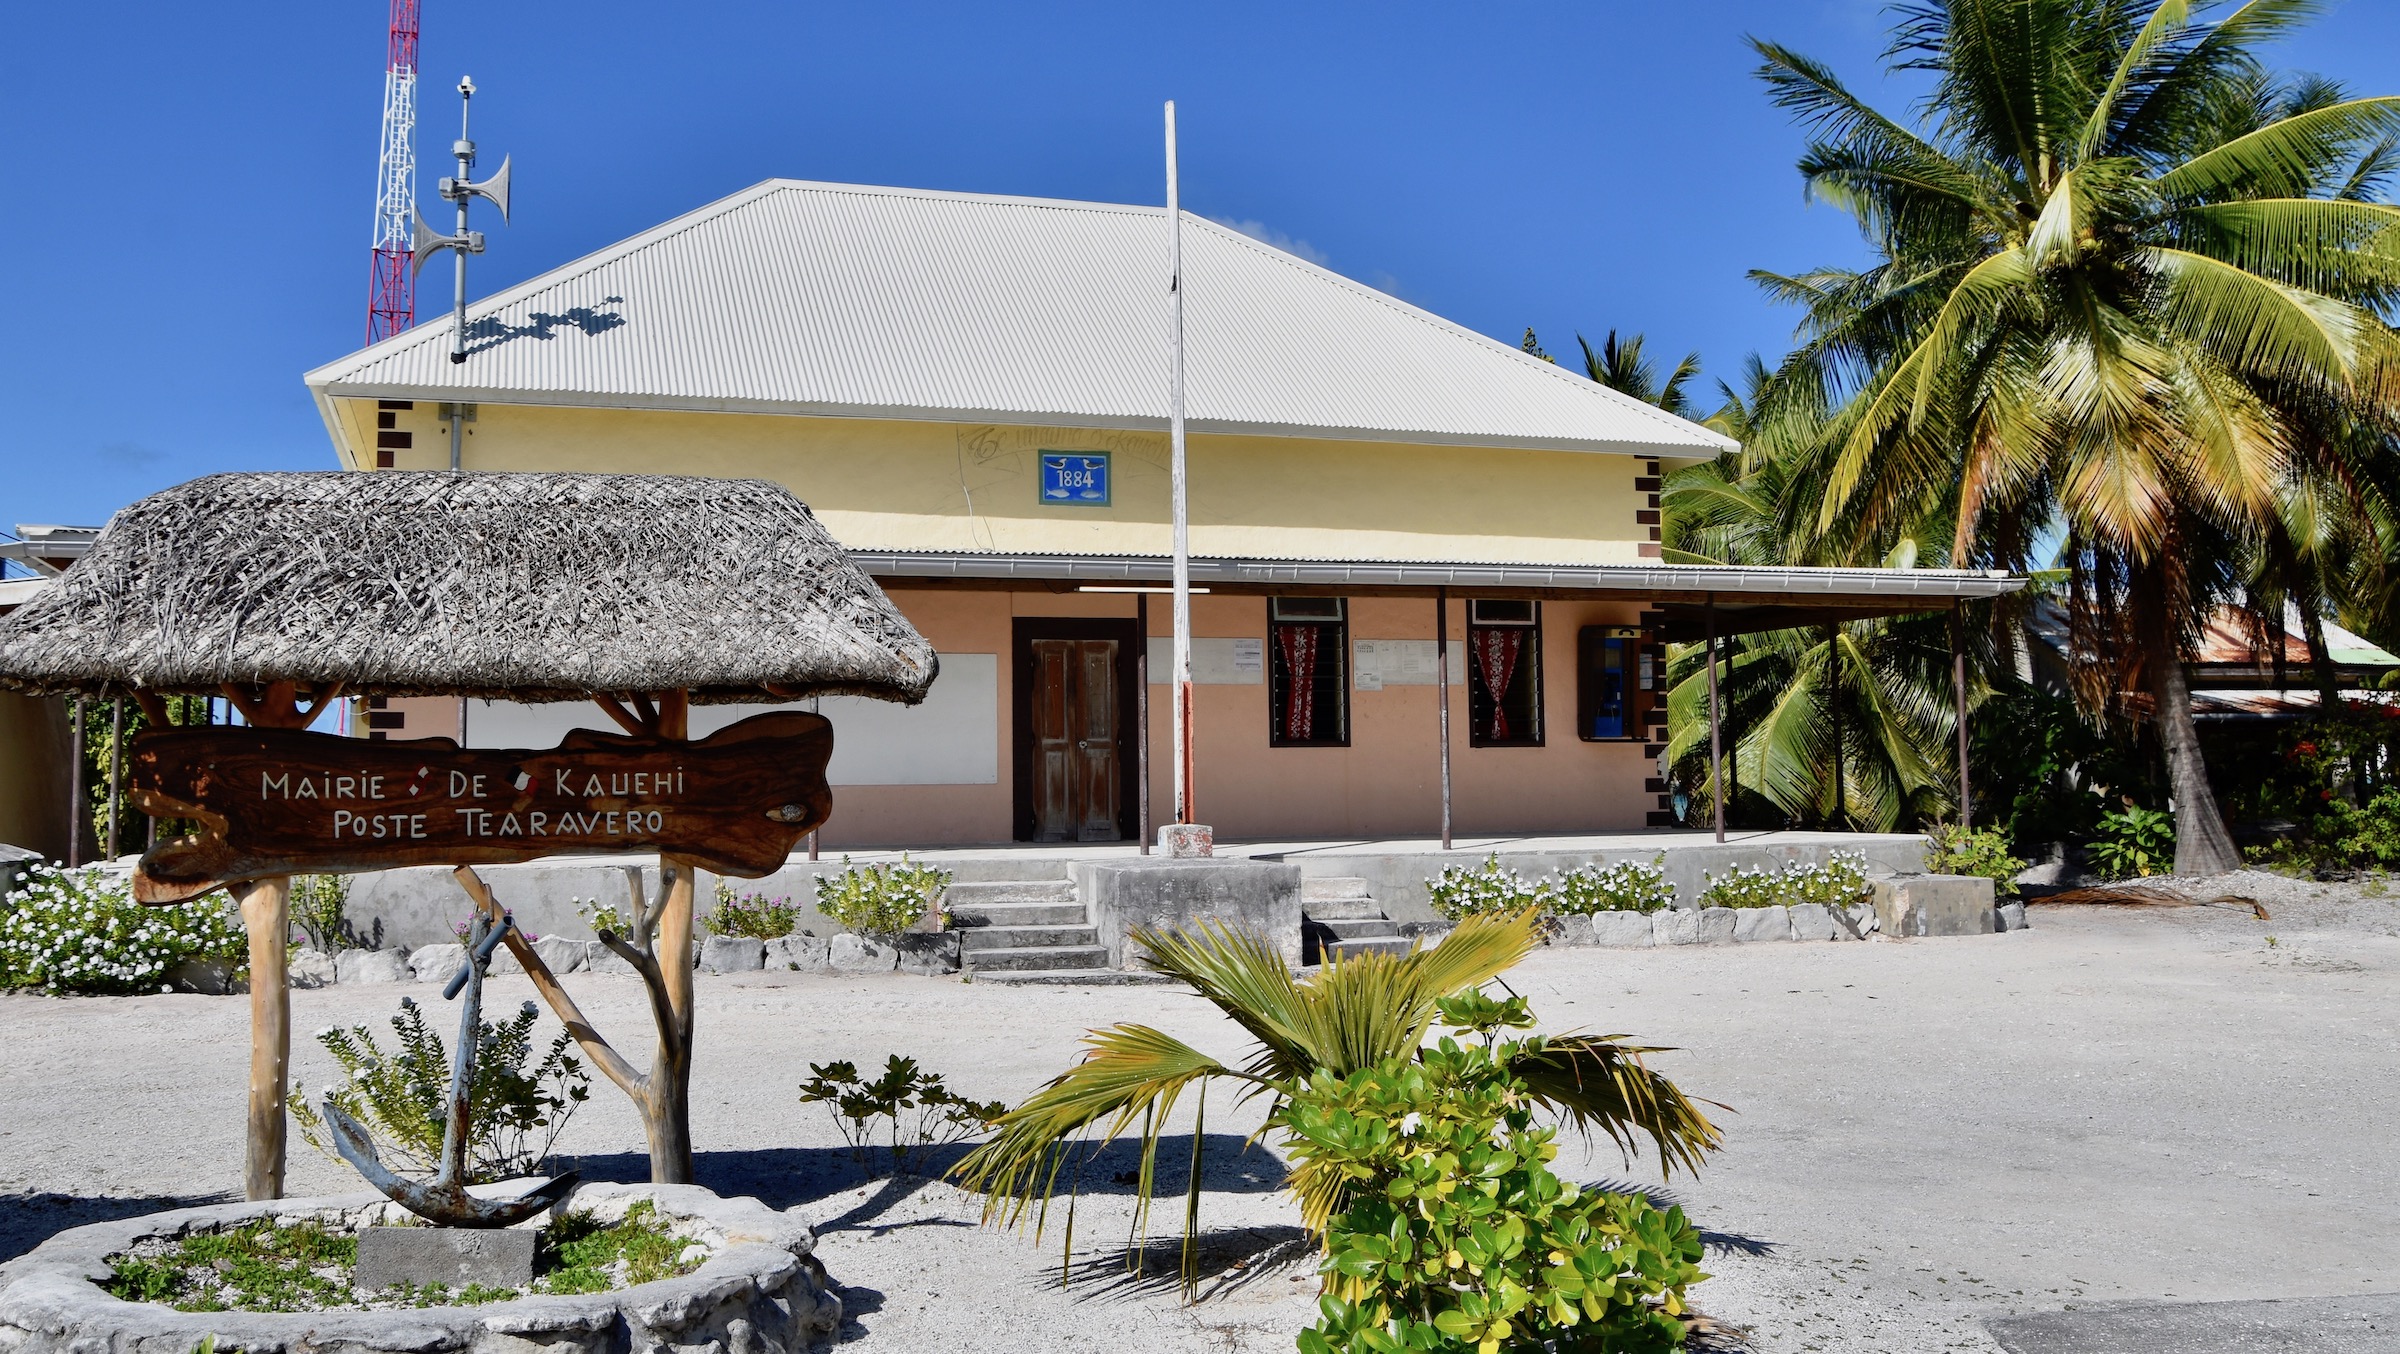 Town Hall of Teavarero, Kauehi